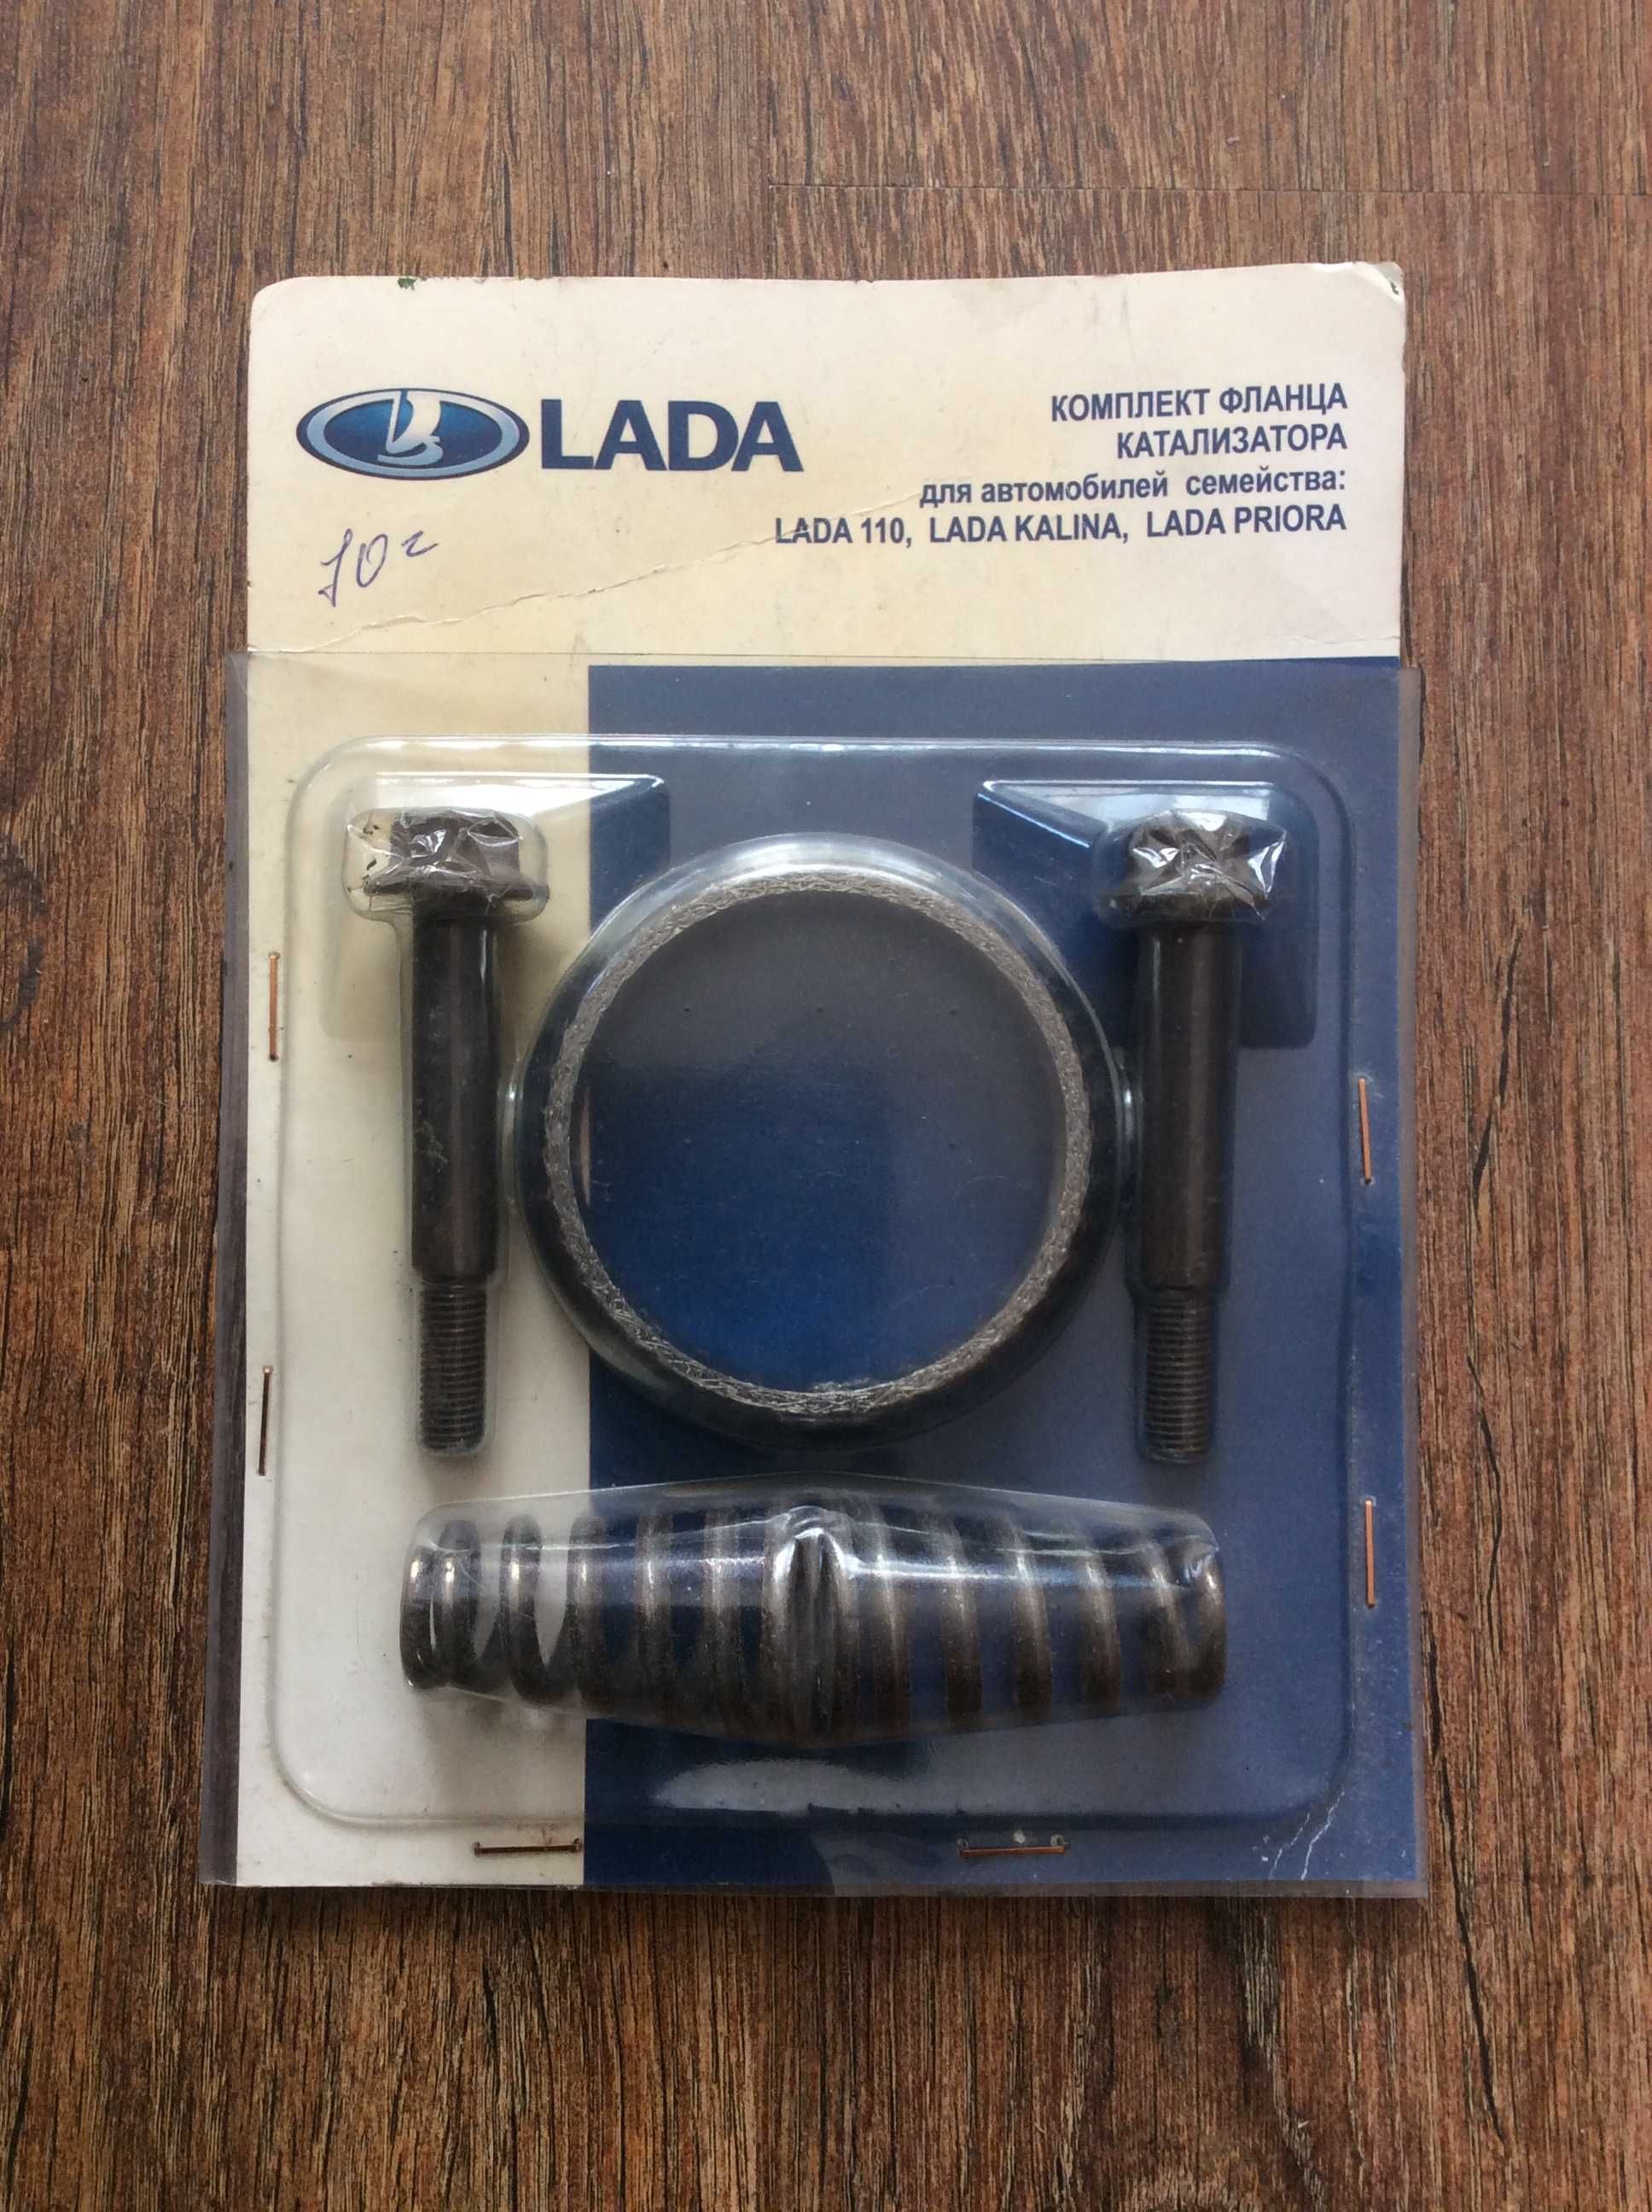 Комплект фланца катализатора LADA 110- LADA KALINA.- LADA PRIORA